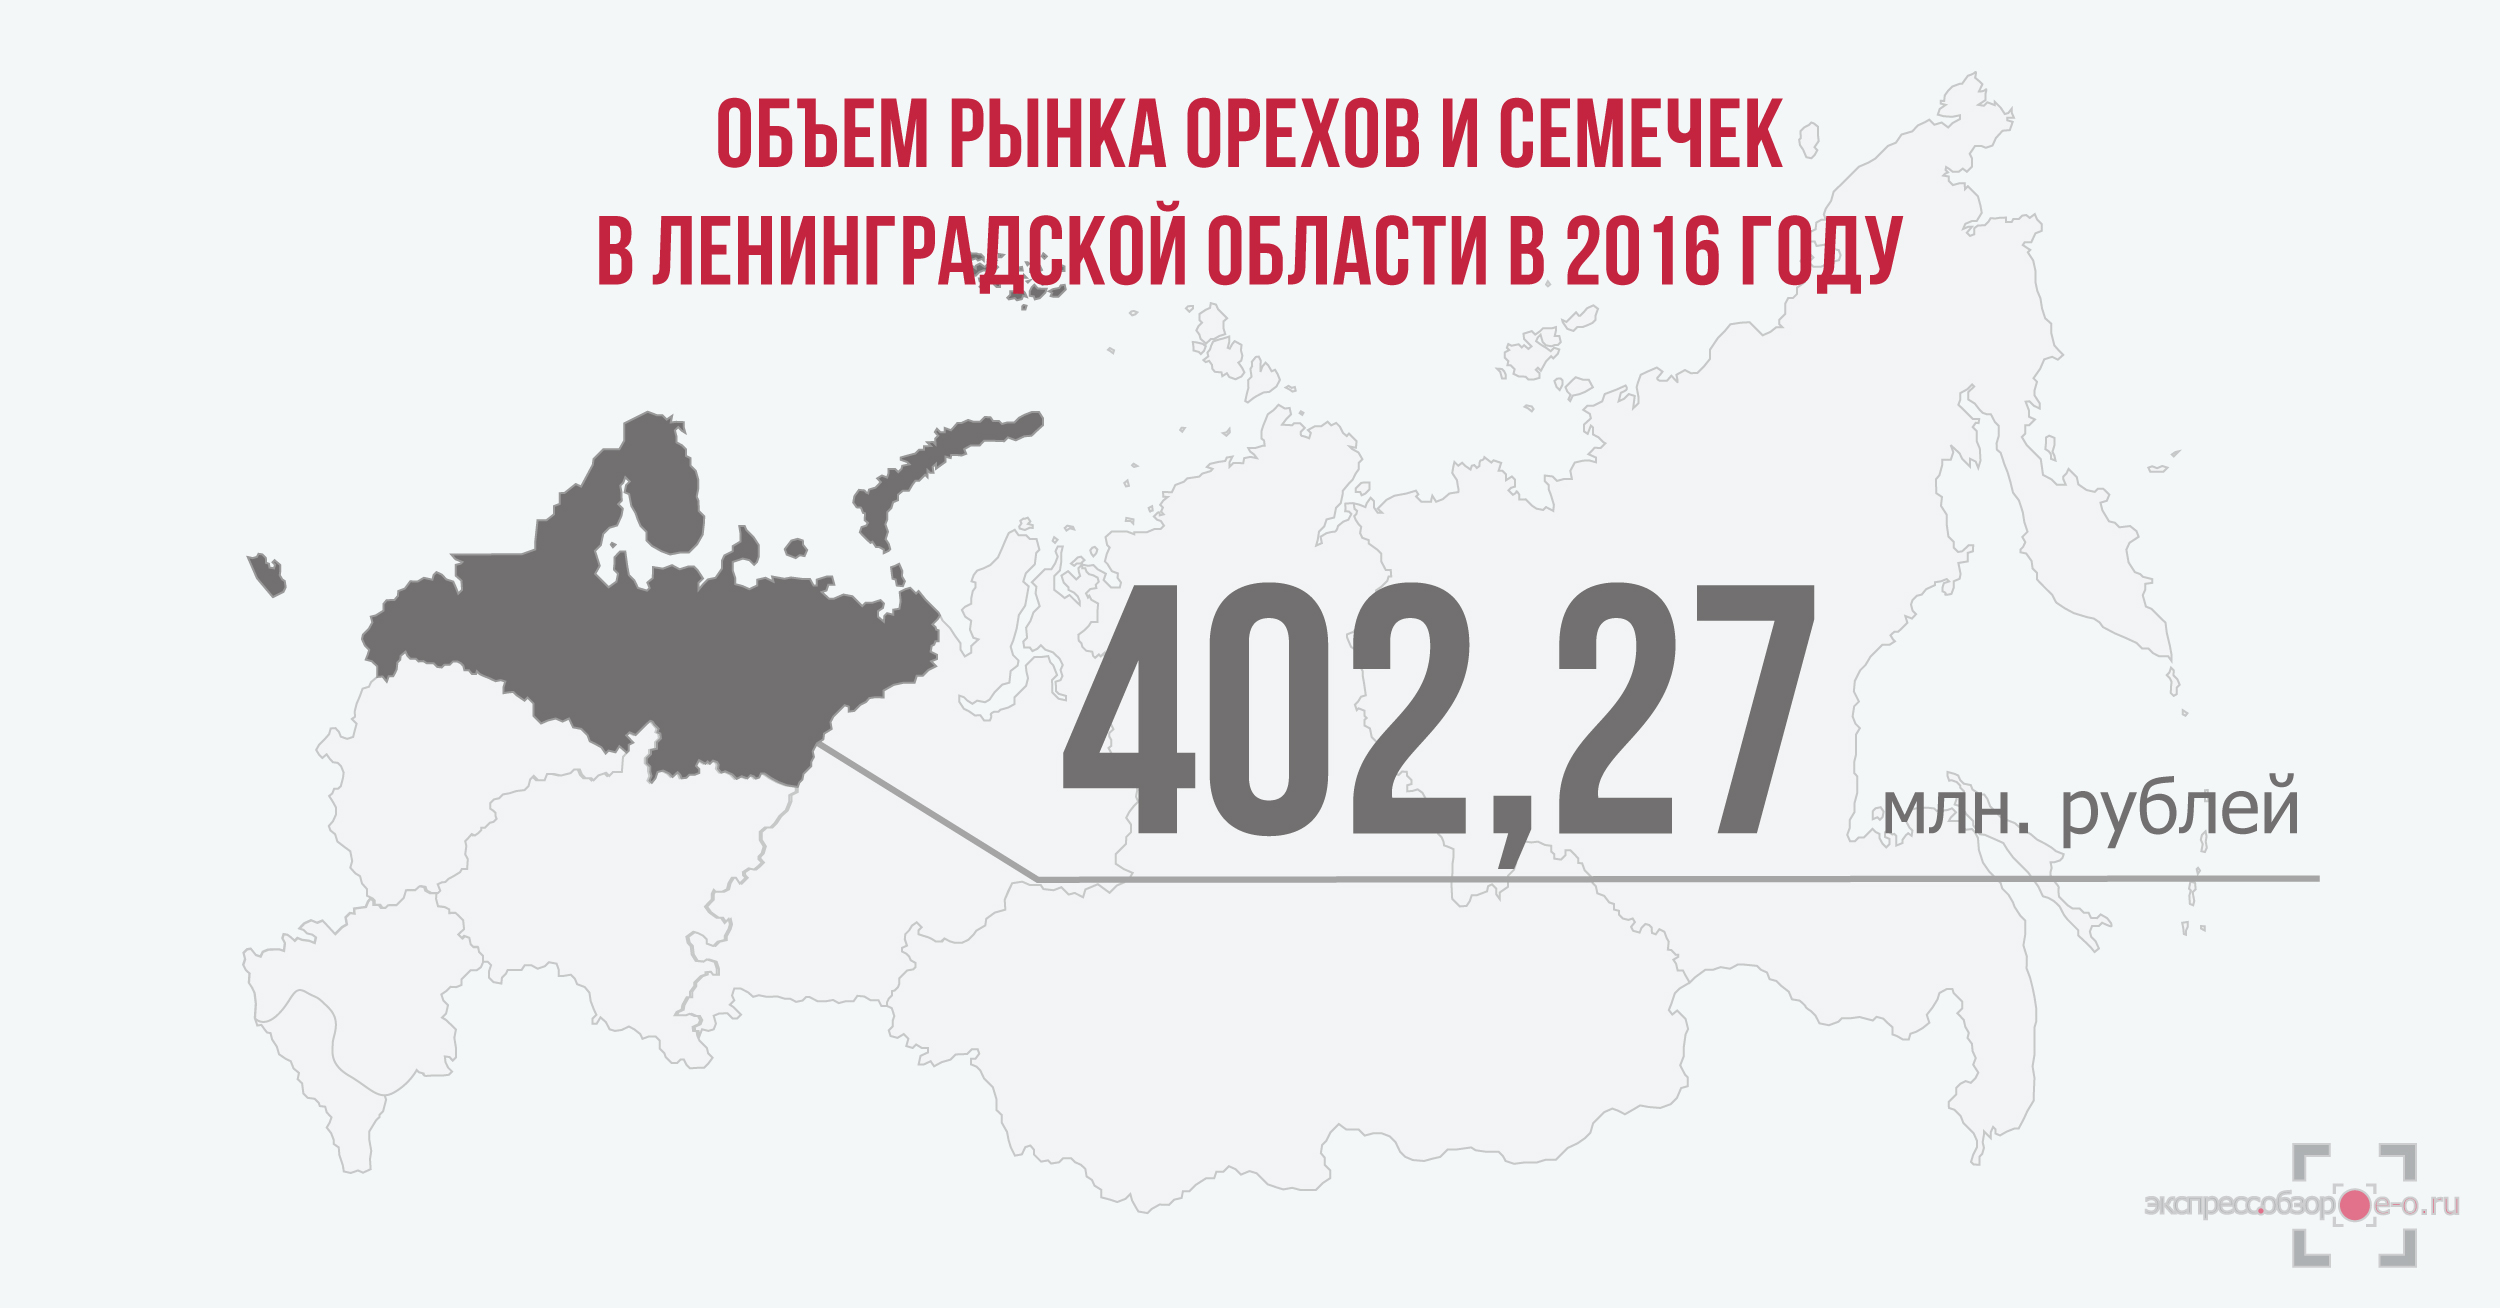 объем рынка орехов и семечек в России в 2016 году